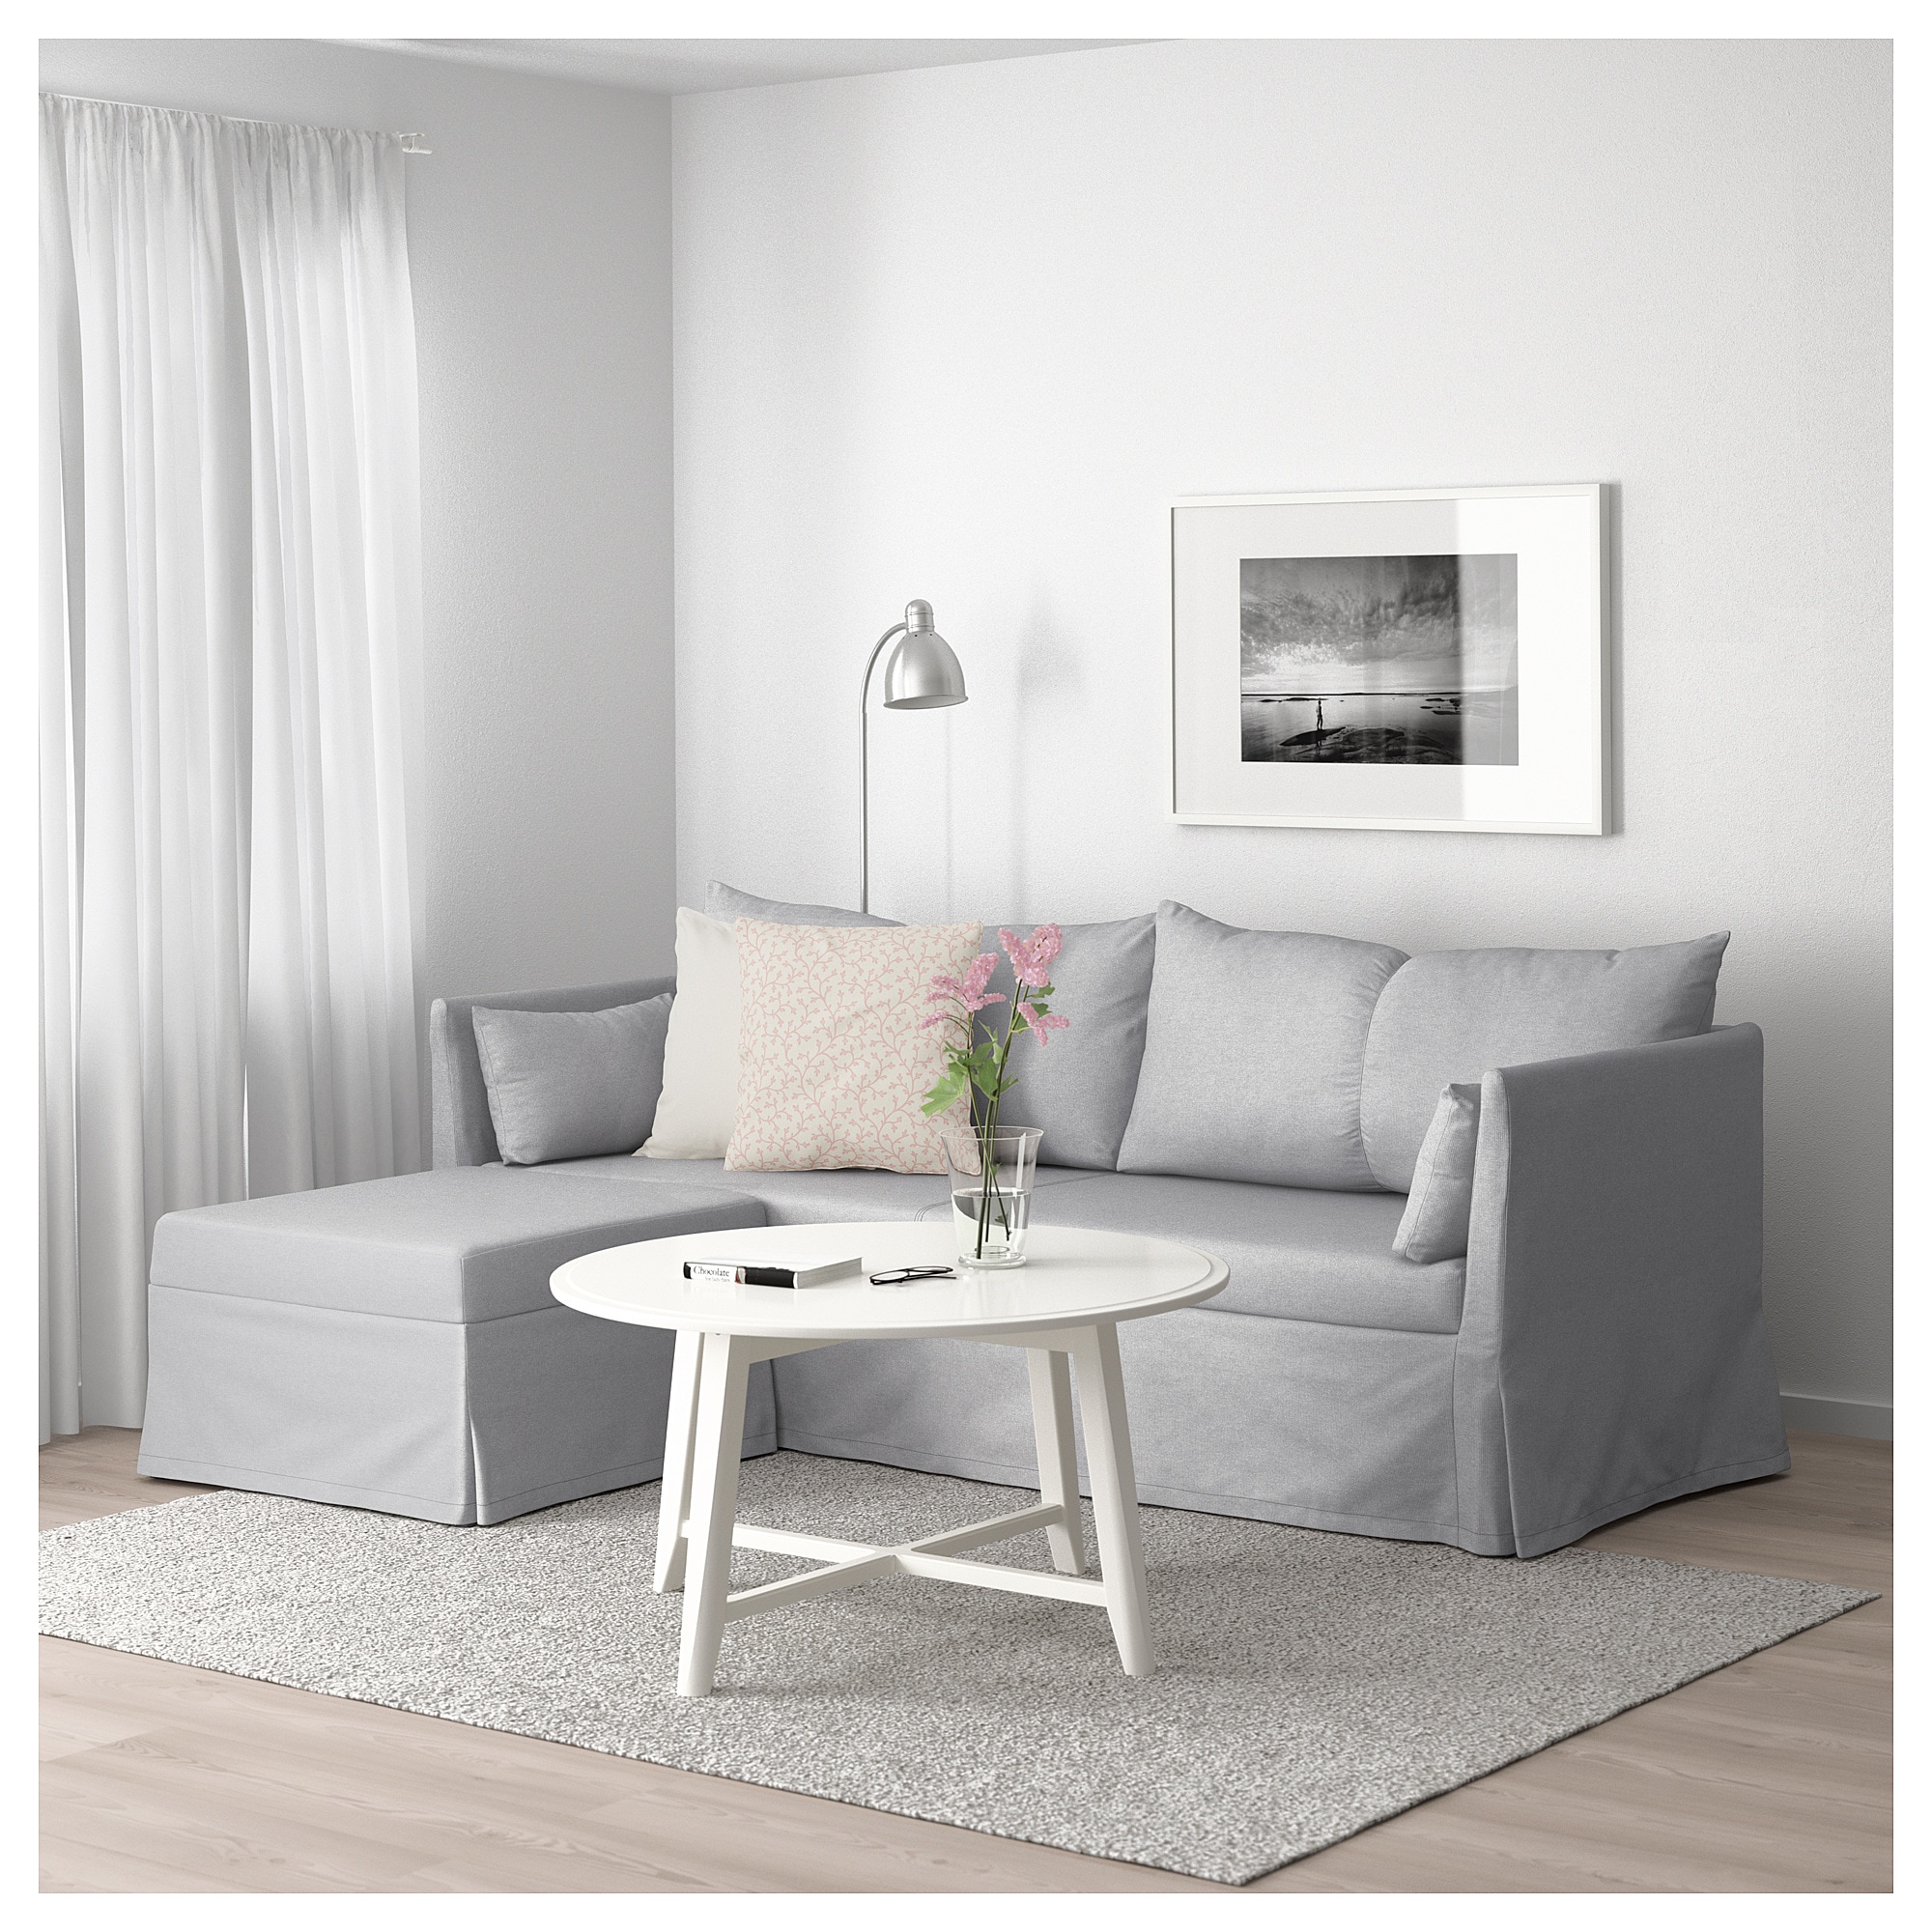 Fortløbende Dyrke motion pengeoverførsel IKEA Bråthult and Sandbacken sofa review: Same frame, different name? |  Comfort Works Blog & Sofa Resources